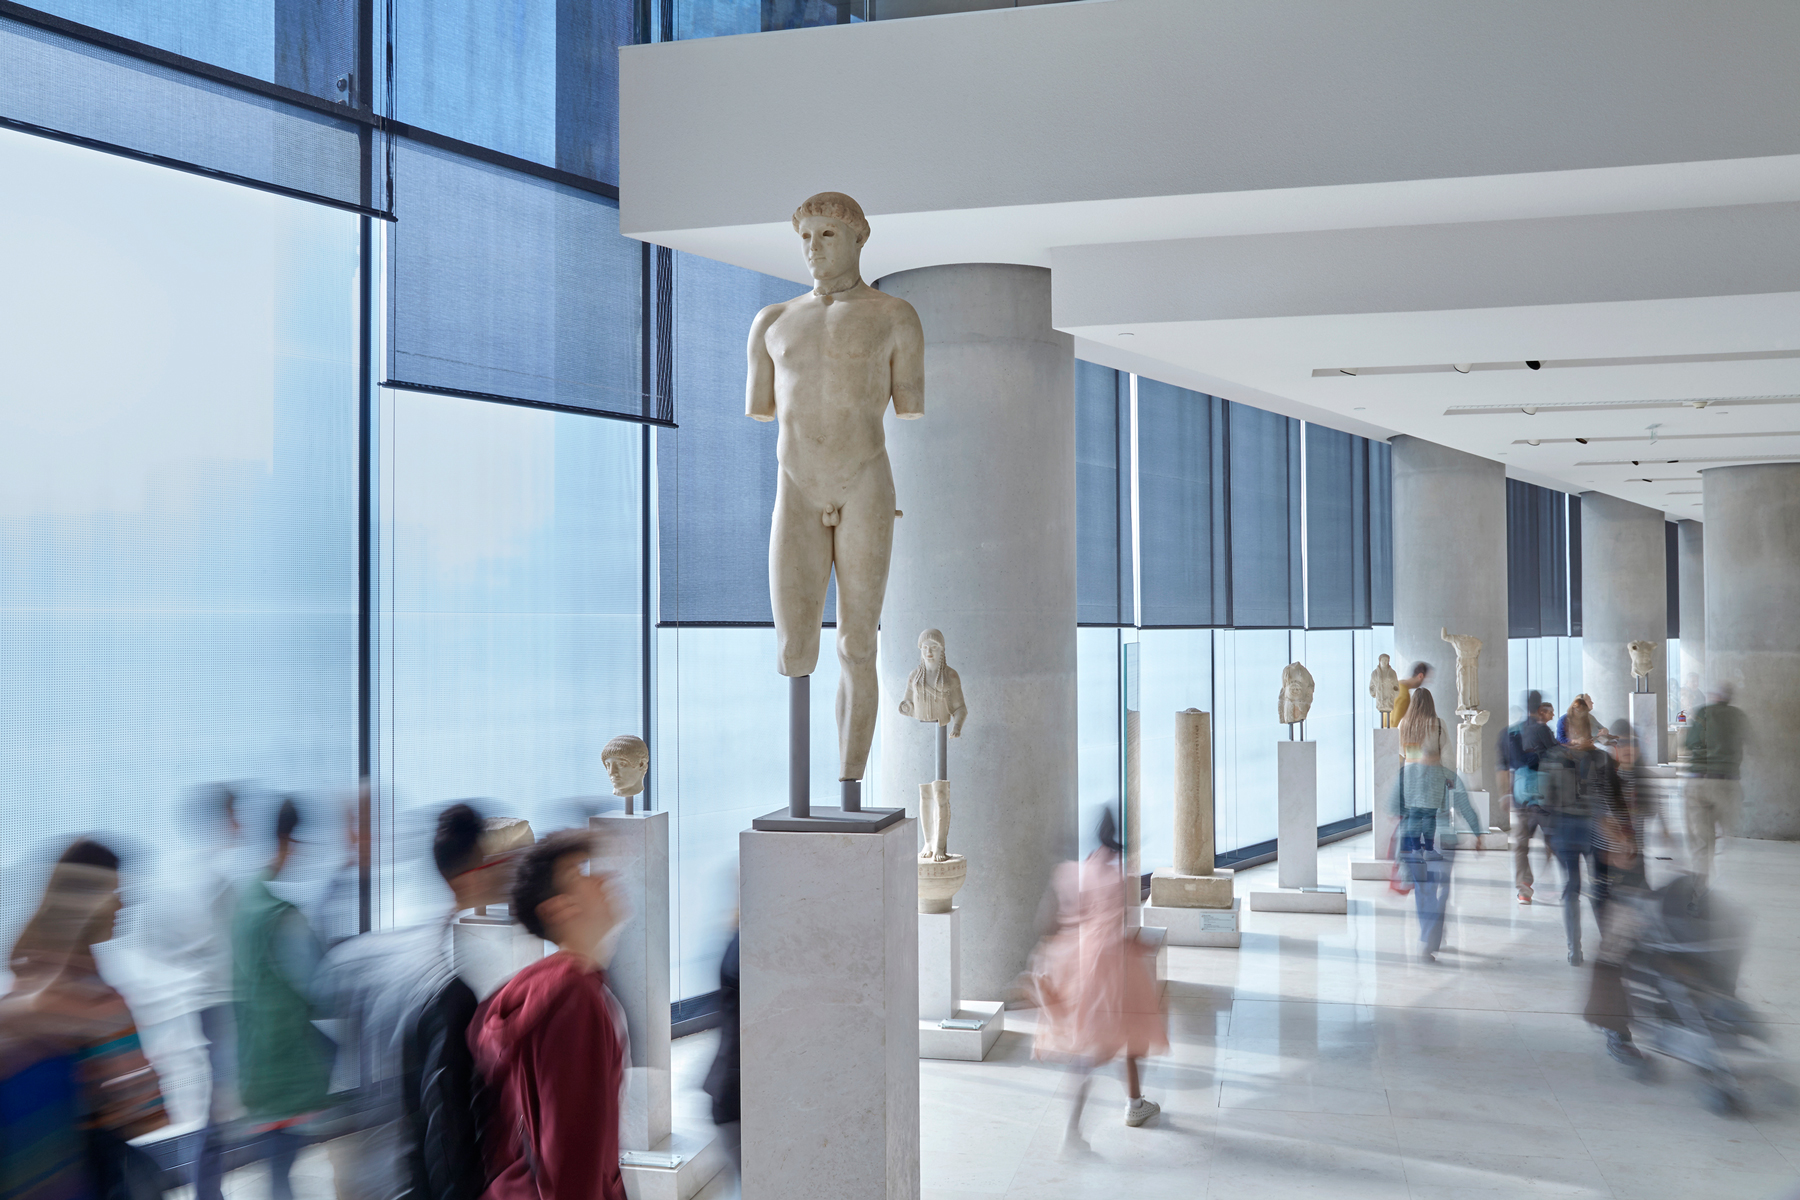 Μουσείο Ακρόπολης: Με δωρεάν είσοδο γιορτάζει την Ευρωπαϊκή Νύχτα και τη Διεθνή Ημέρα Μουσείων